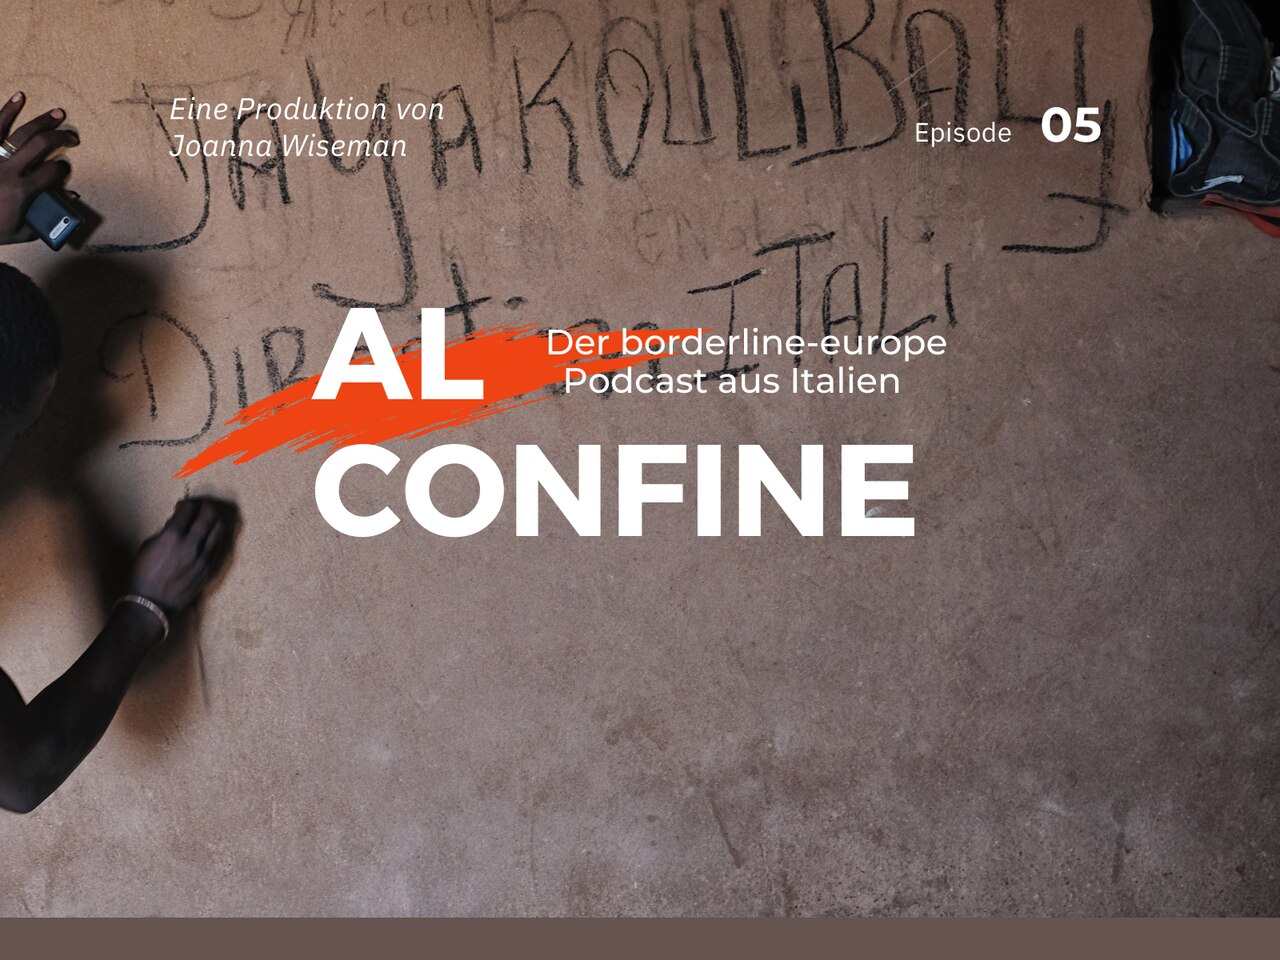 Al Confine - Der borderline-europe Podcast aus Italien